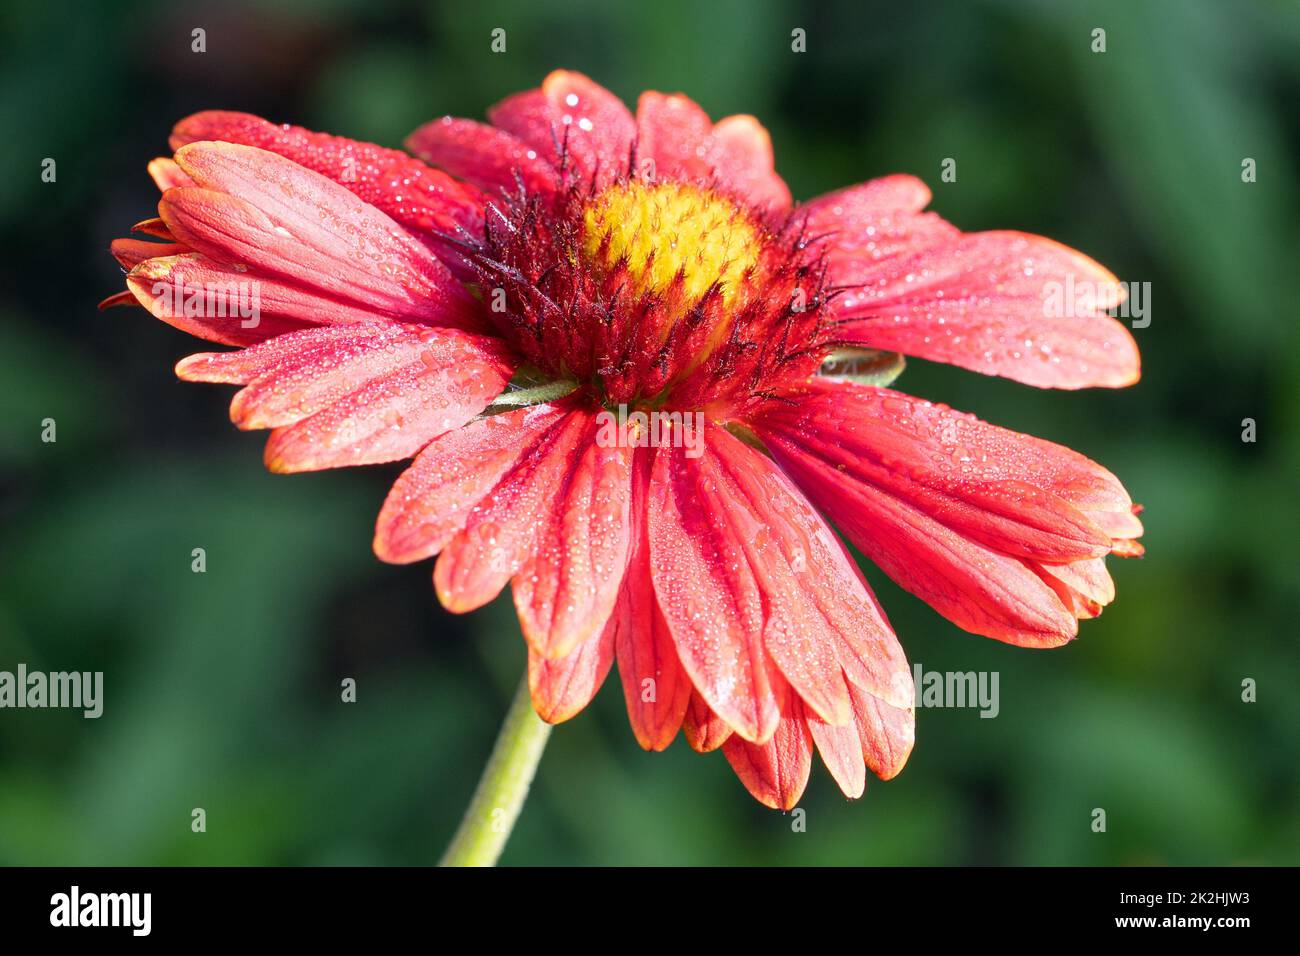 Blanket flower, Gaillardia grandiflora Stock Photo